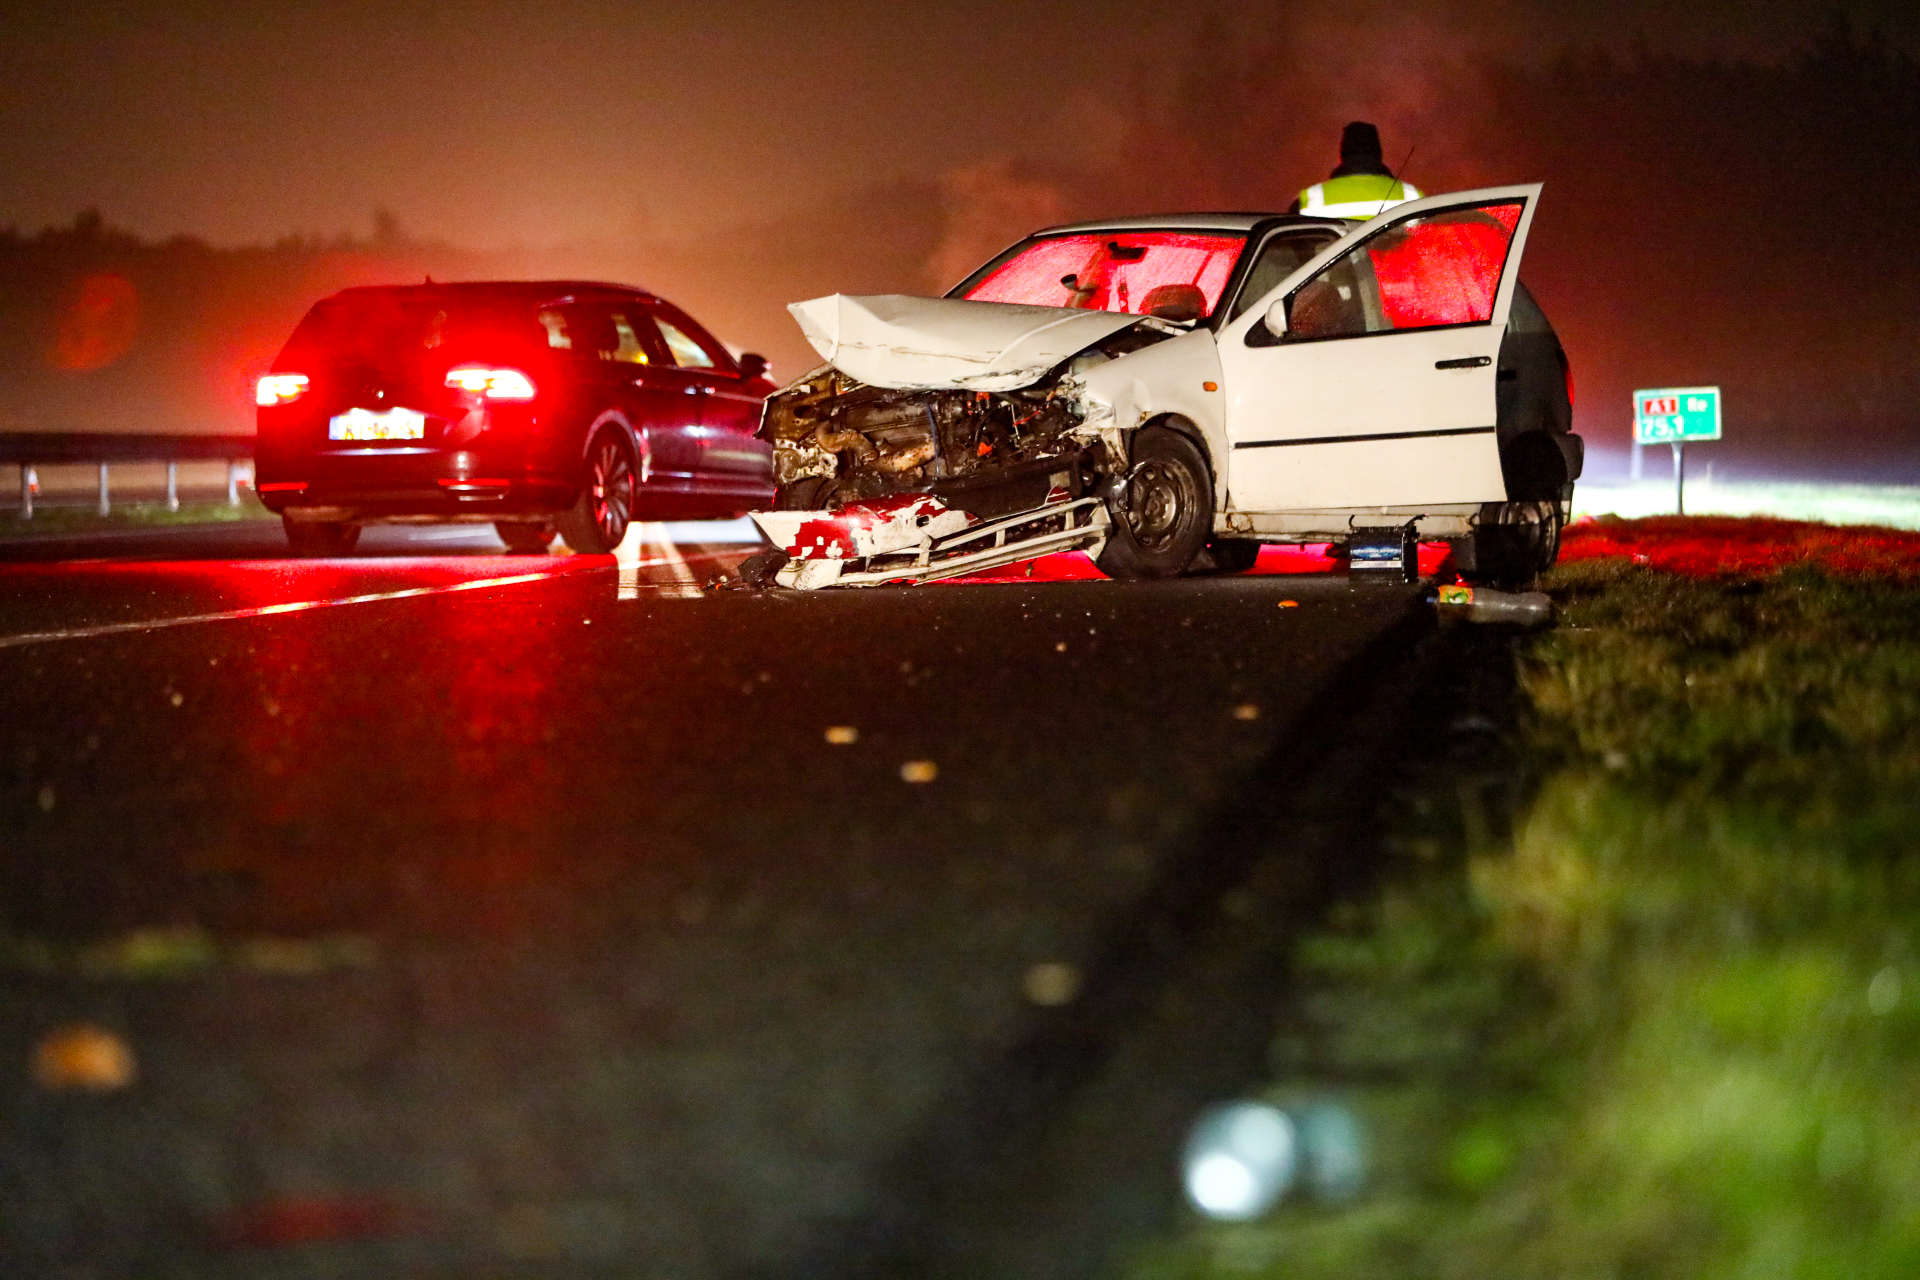 Politieachtervolging na misdrijf in Gouda eindigt in crash op A1 bij Apeldoorn: meerdere politie-auto’s geramd, bestuurder gewond en aangehouden, snelweg dicht